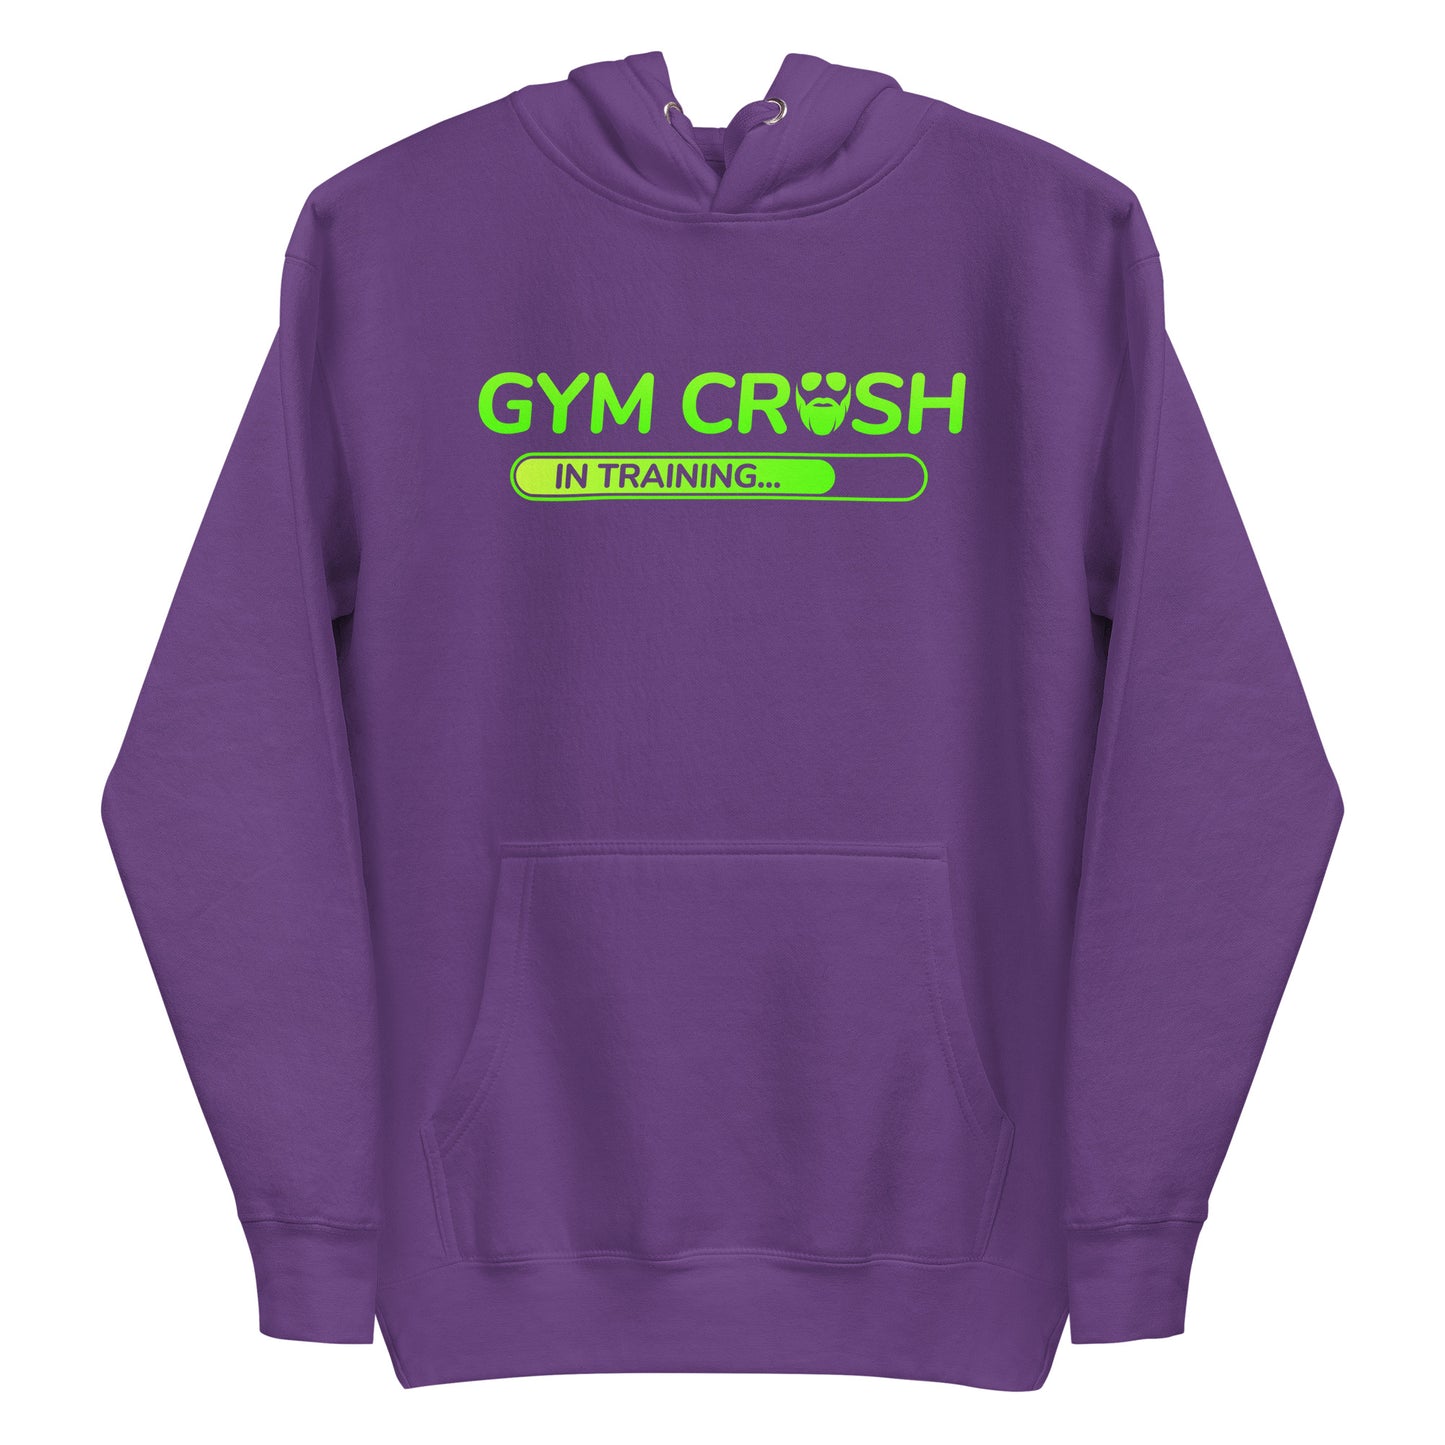 Gym Crush In Training (Green) Premium Hoodie